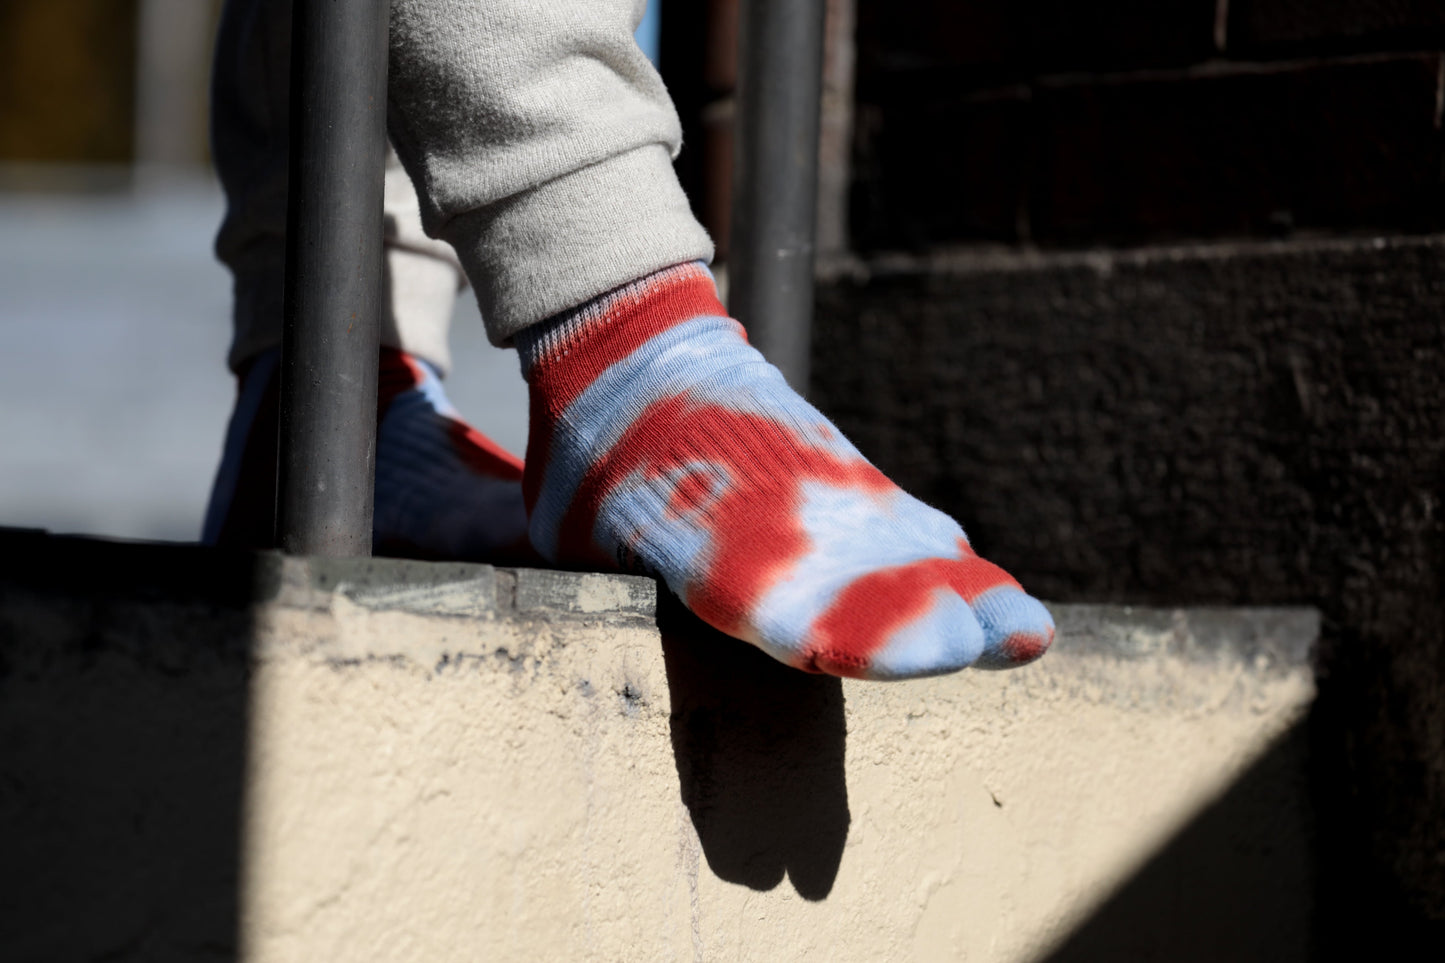 Tie Dye Ankle Socks【NODAL】